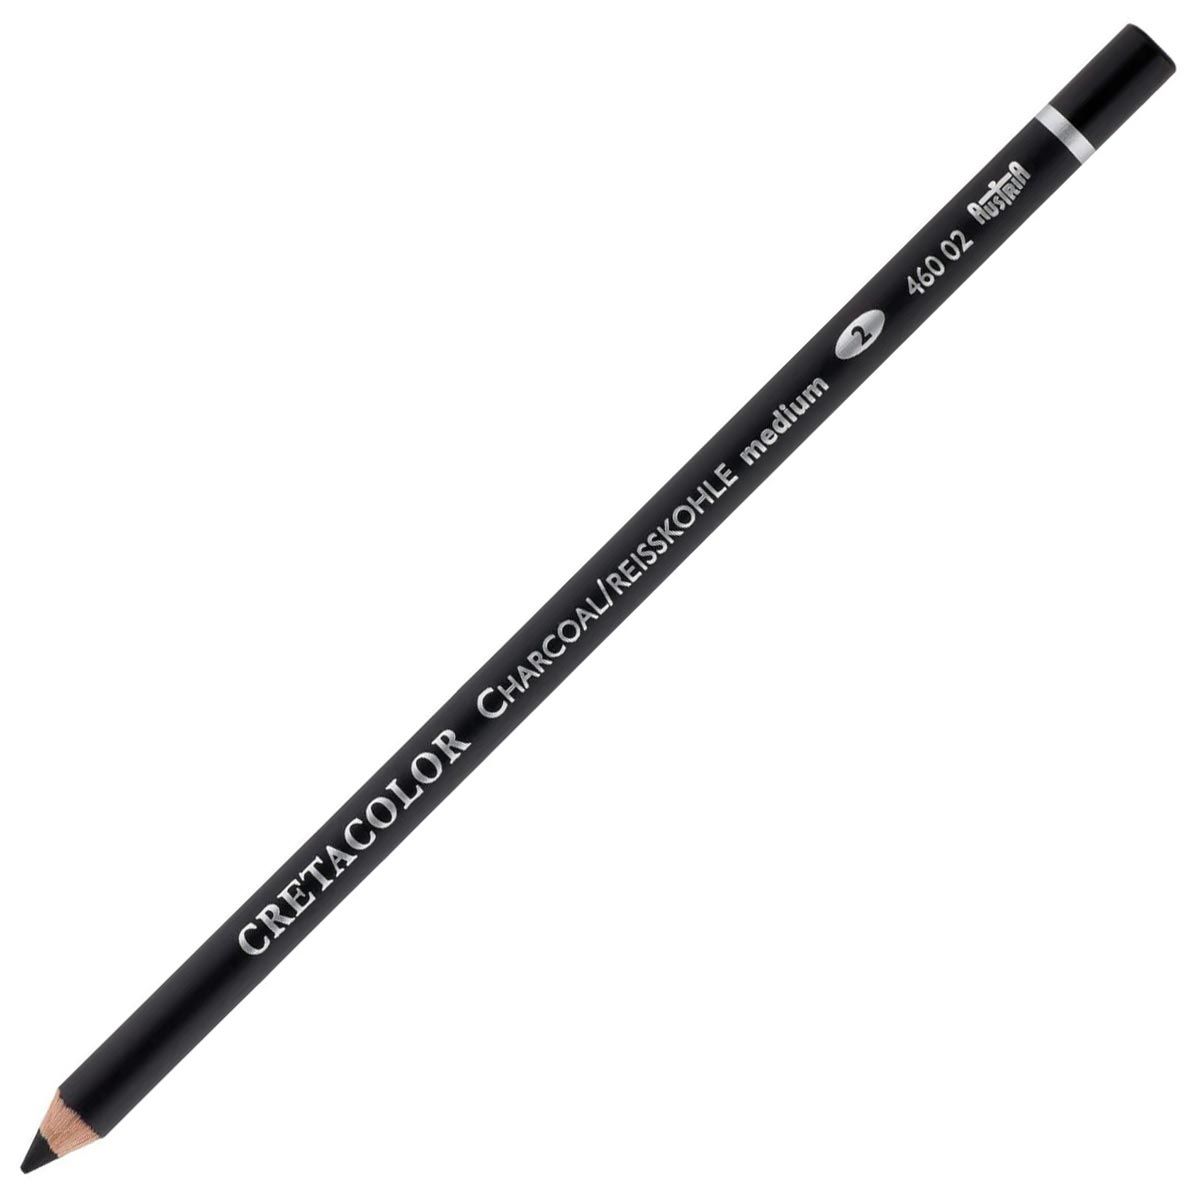 Cretacolor Charcoal Pencil - Medium